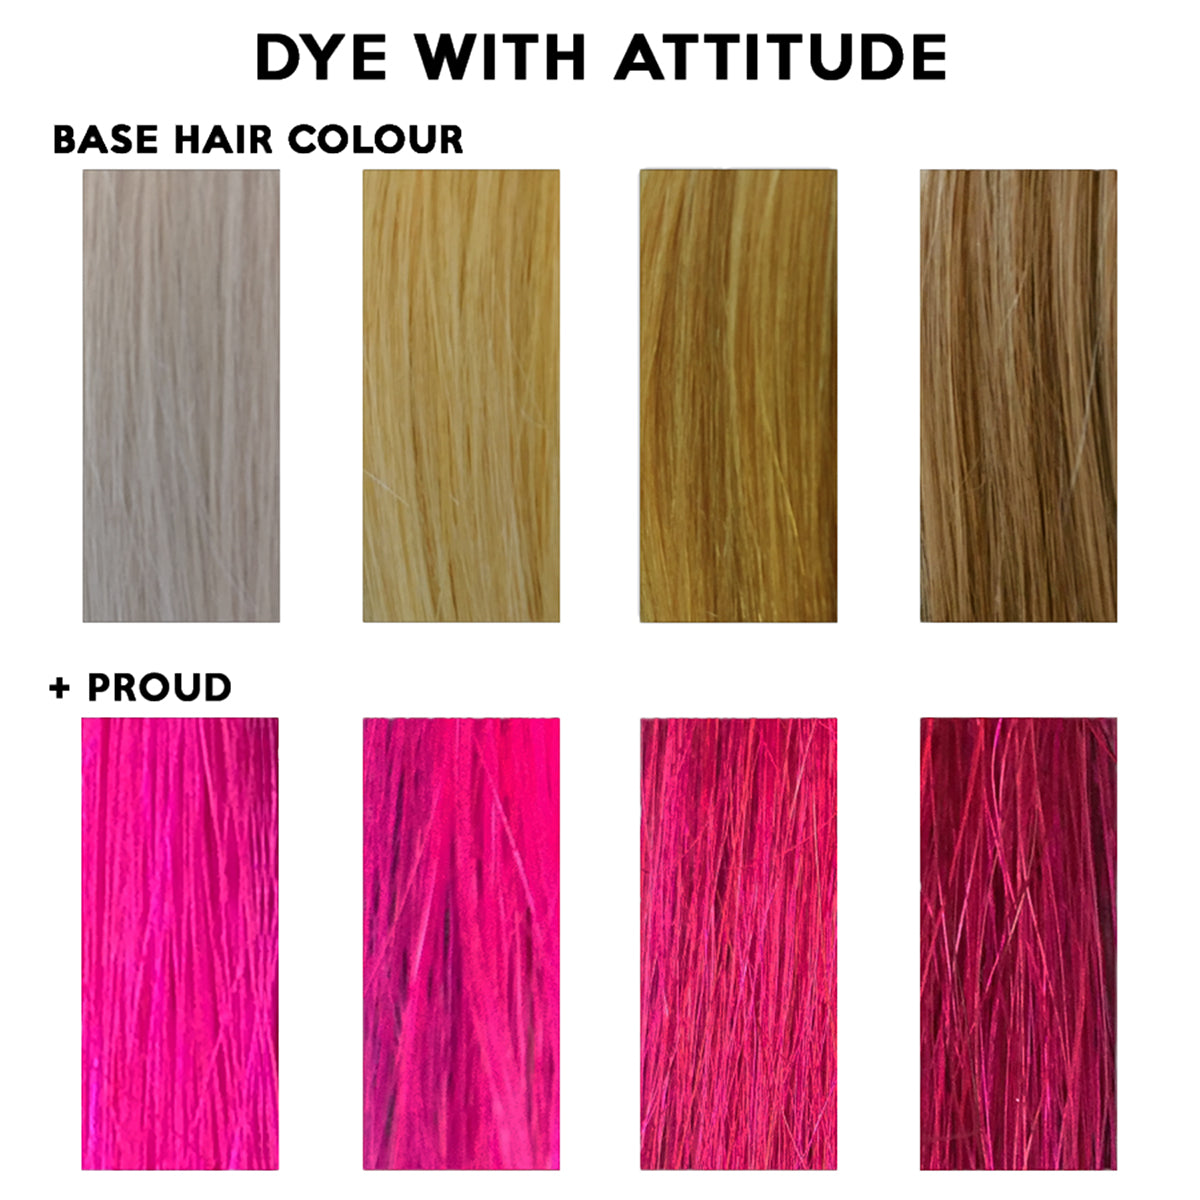 PROUD UV PINK - Attitude Haarfärbemittel - 135ml